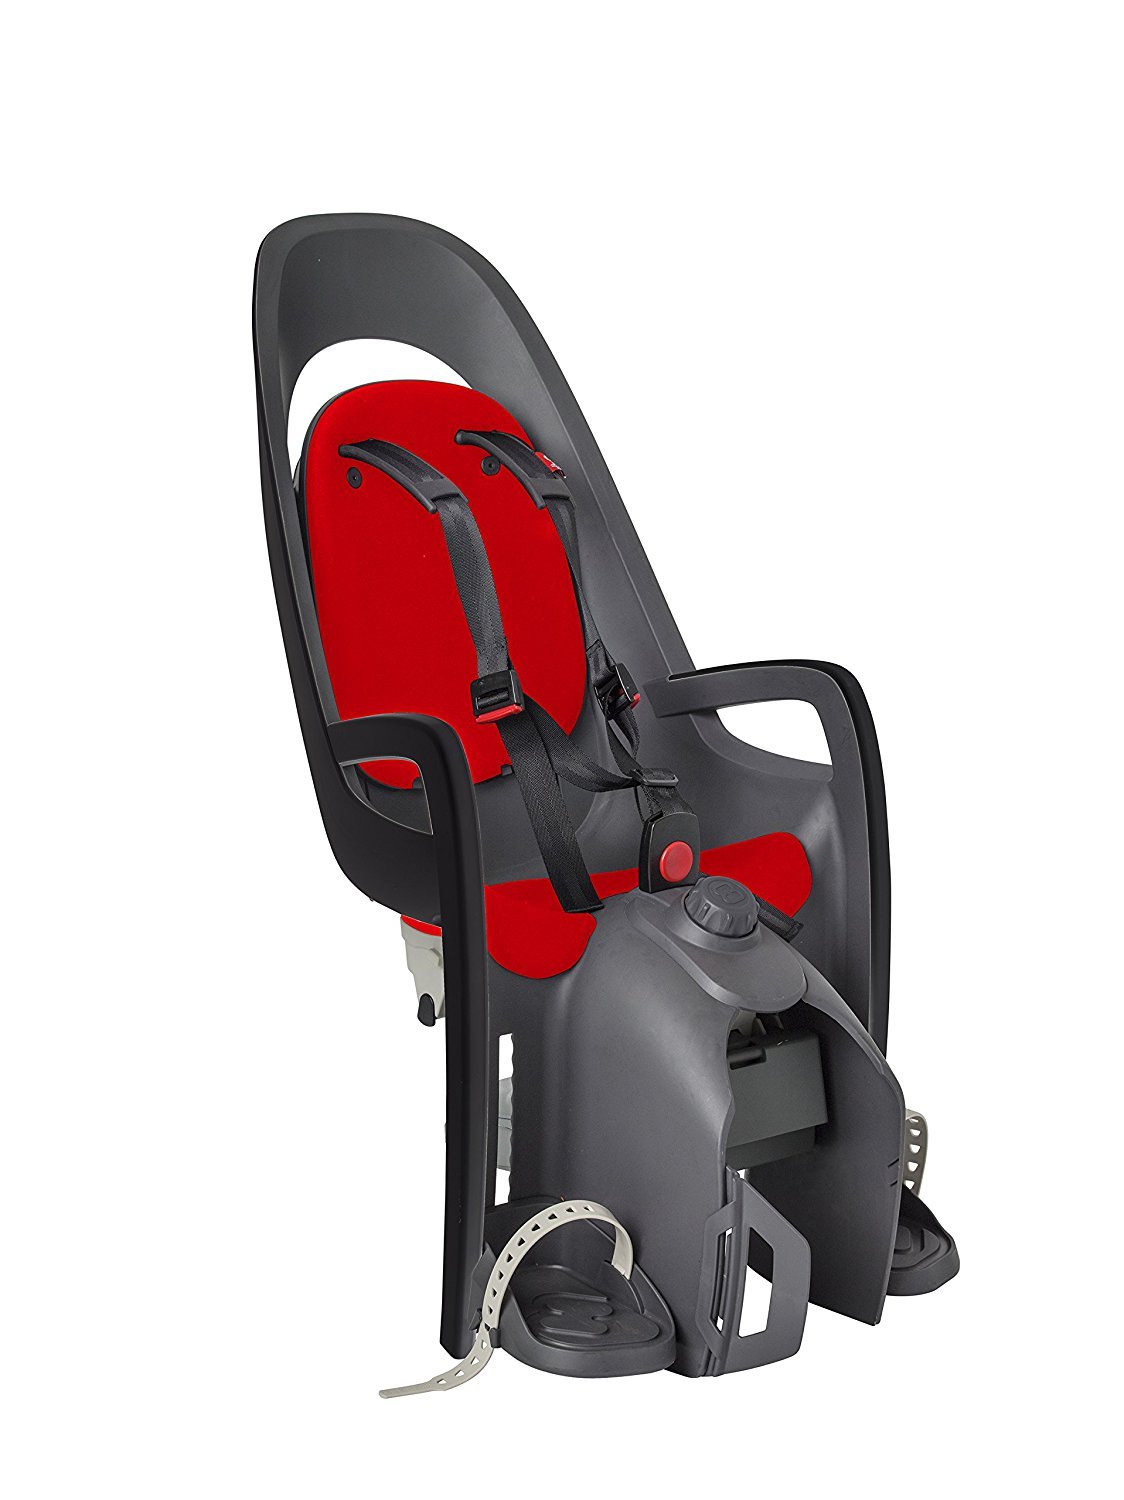 Детское велокресло HAMAX CARESS с адаптером для багажника, серый/красный, до 25 кг, 553013 адаптер для крепления на багажник hamax caress carrier adapter серый р one size 604011